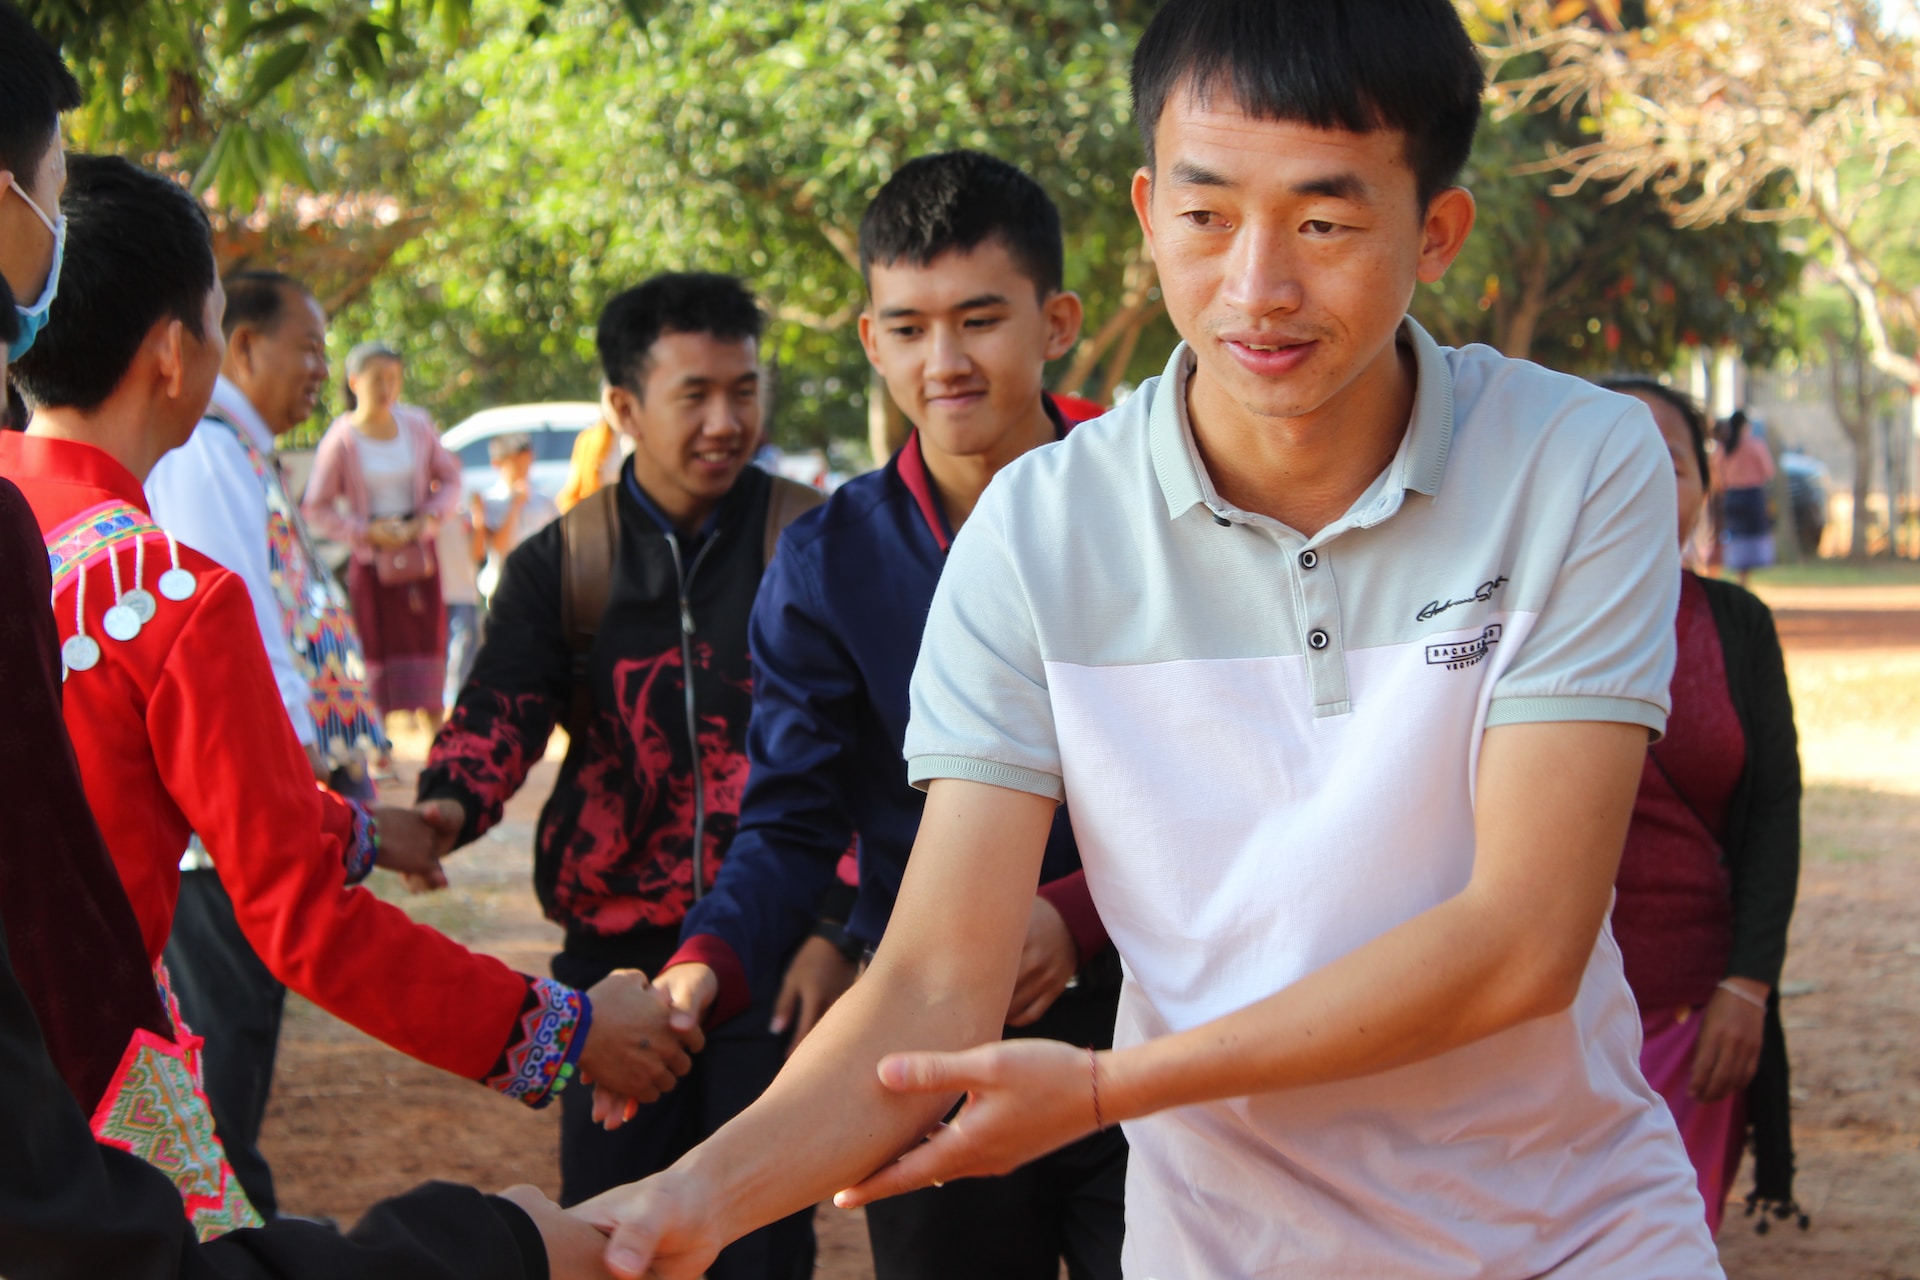 Adolescentes são interrogados após acampamento cristão ser descoberto na Ásia